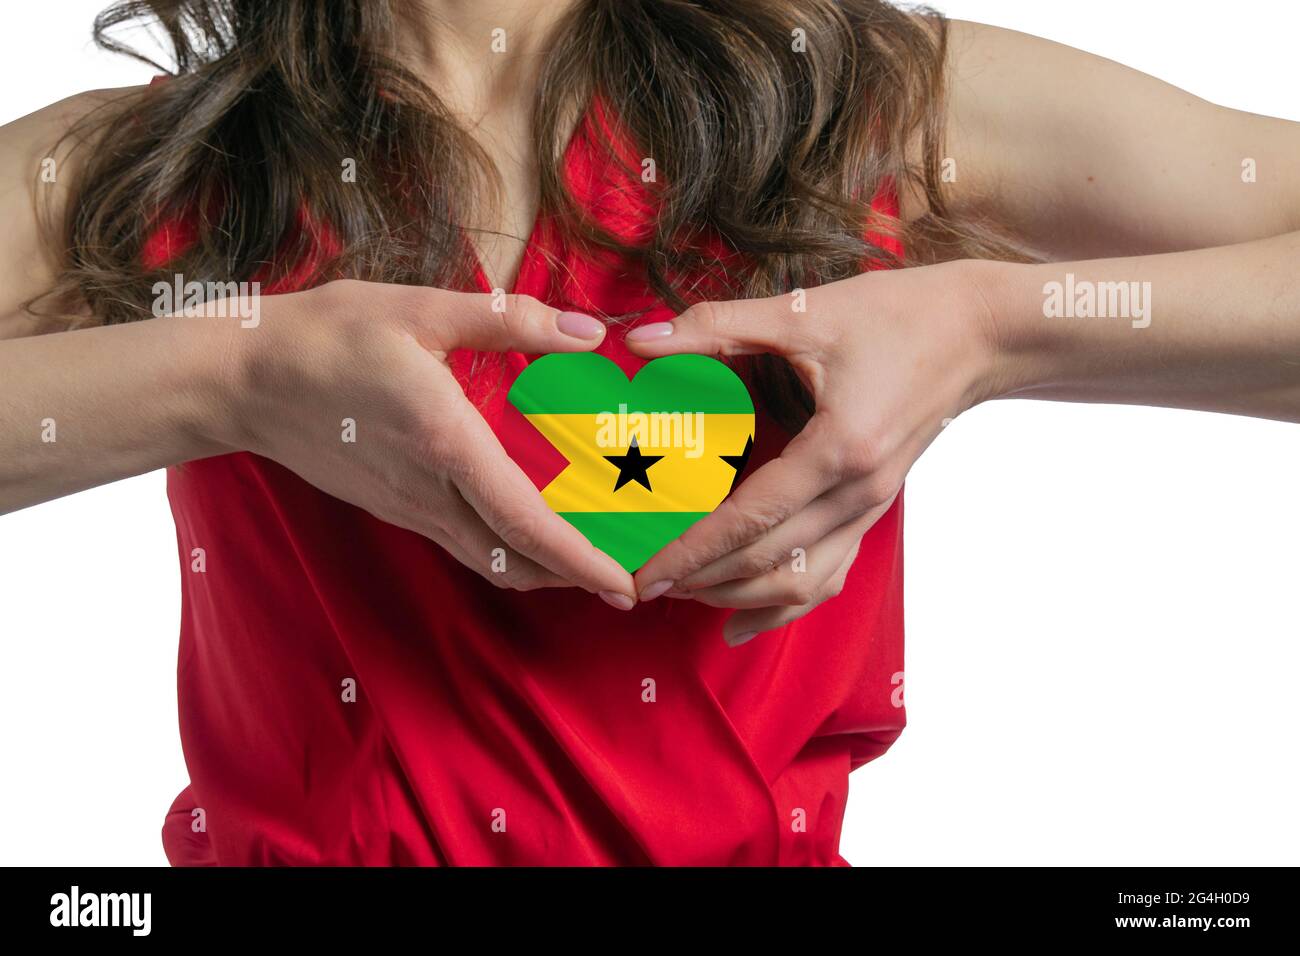 Ich liebe Sao Tome und Principe. Die Frau hält ein Herz in Form der Flagge von Sao Tome und Principe auf ihrer Brust. Konzept des Patriotismus. Stockfoto